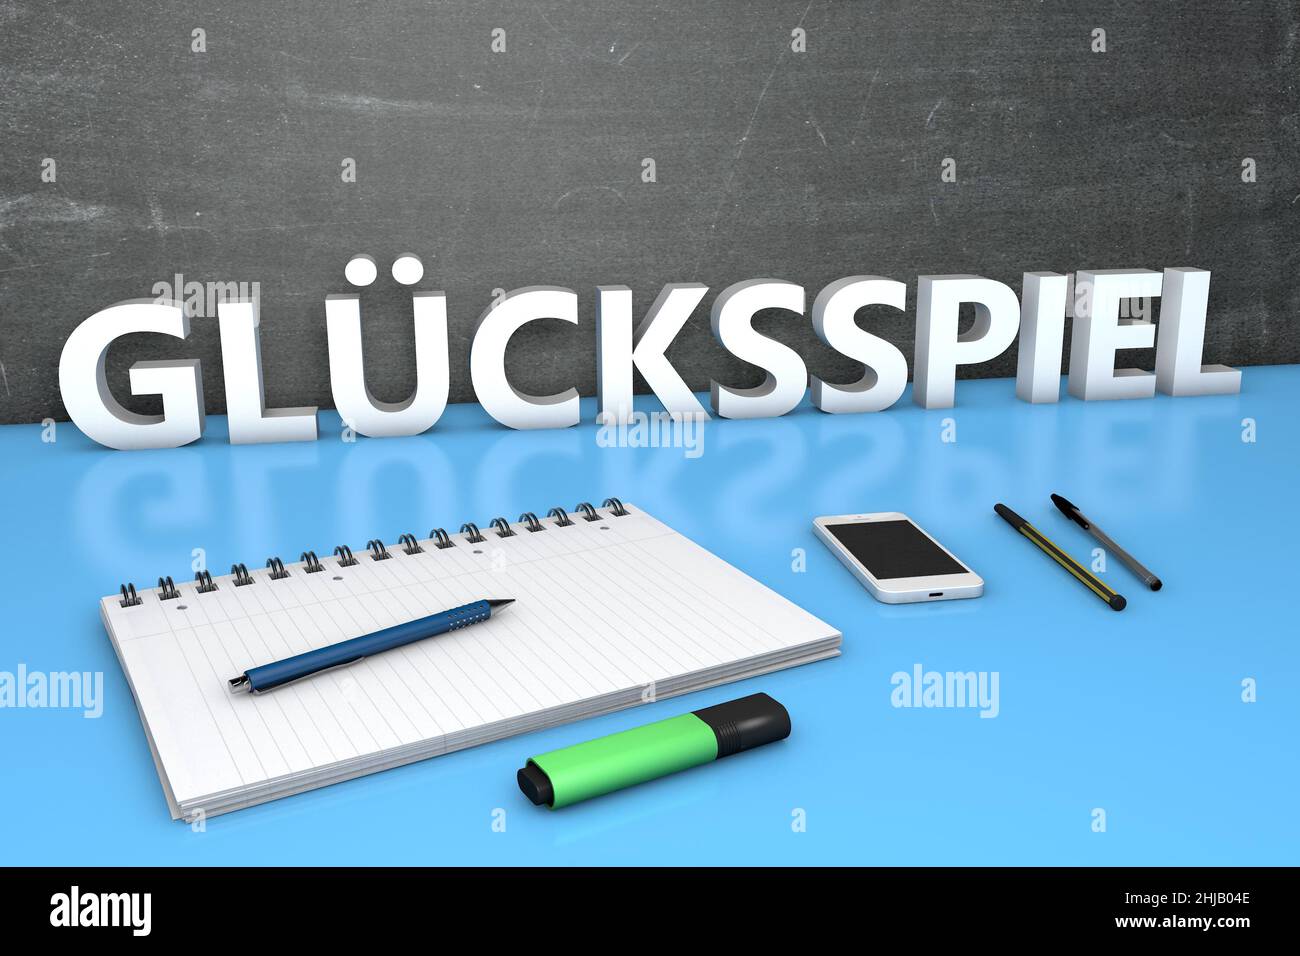 Gluecksspiel - parola tedesca per il gioco d'azzardo o il gioco d'azzardo - testo concetto con lavagna, notebook, penne e telefono cellulare. 3D rappresentazione illustrazione. Foto Stock